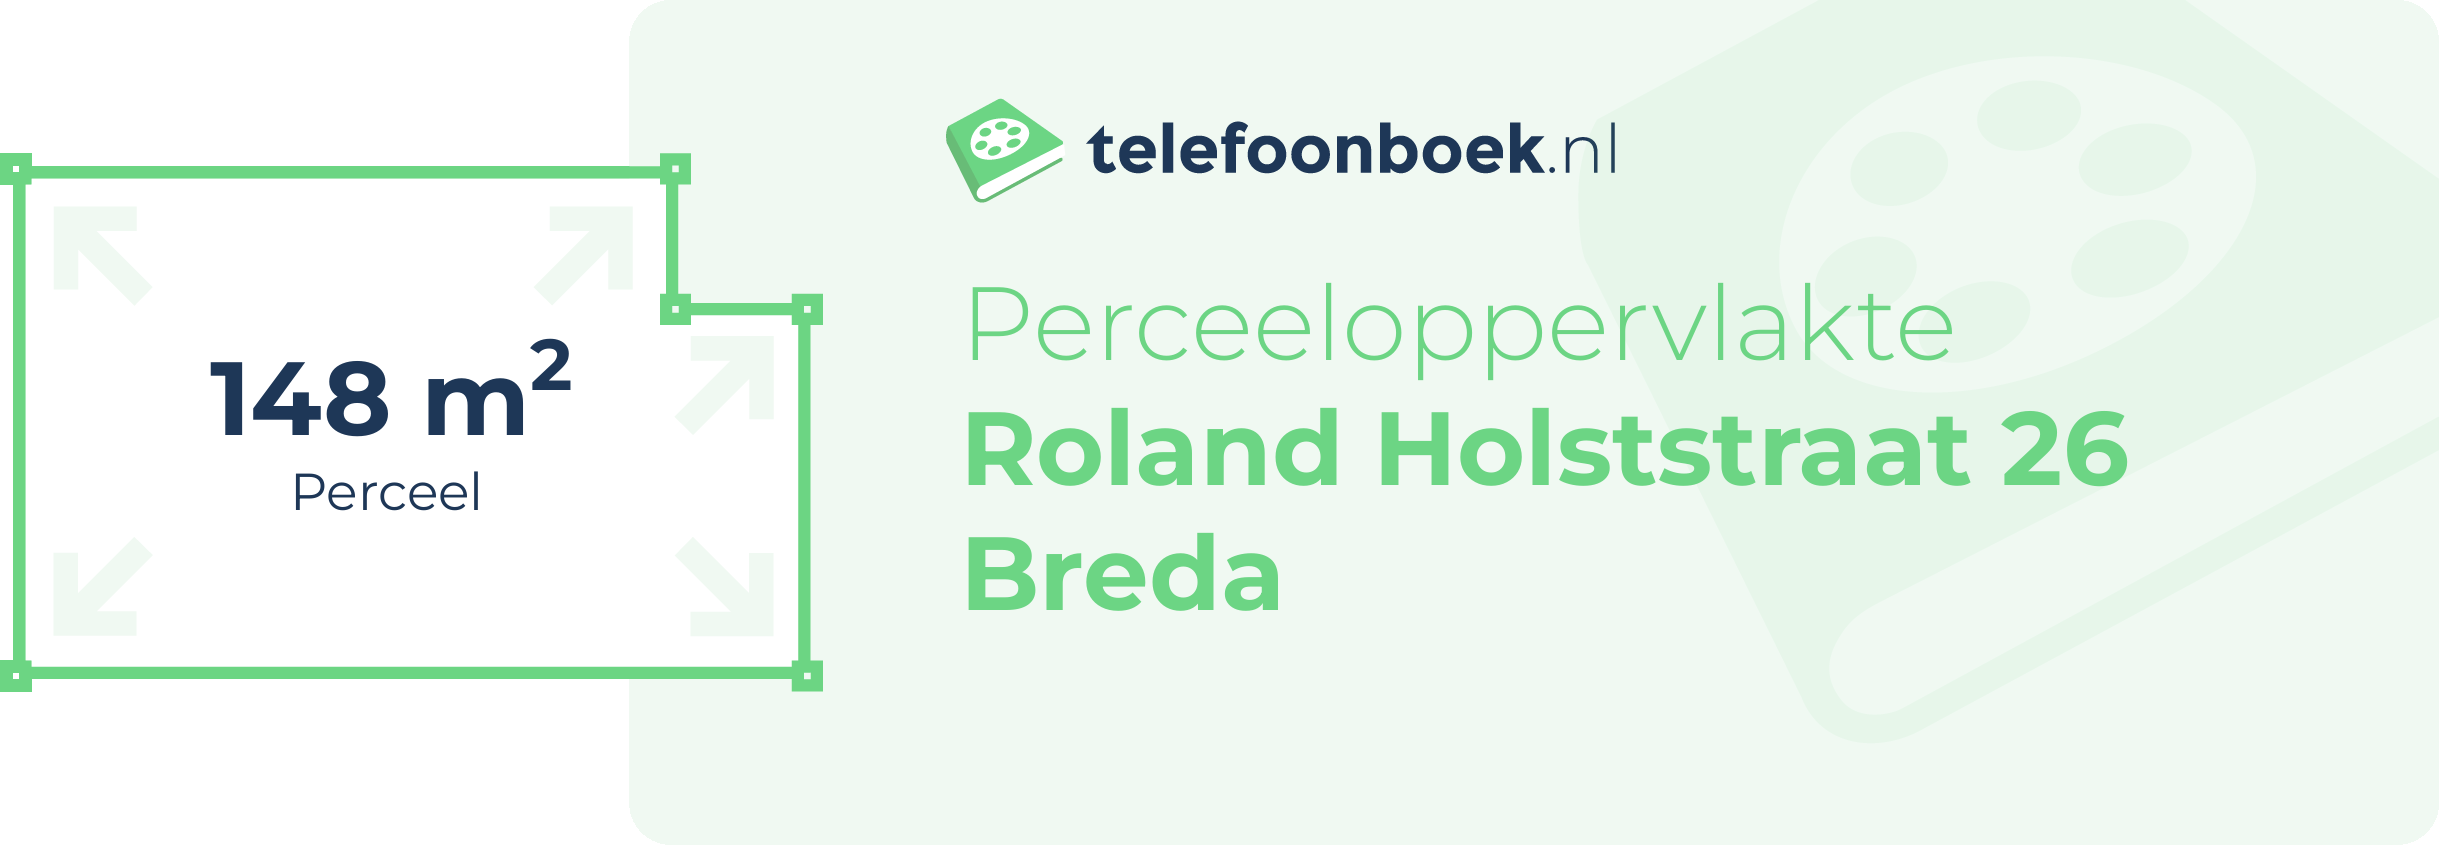 Perceeloppervlakte Roland Holststraat 26 Breda